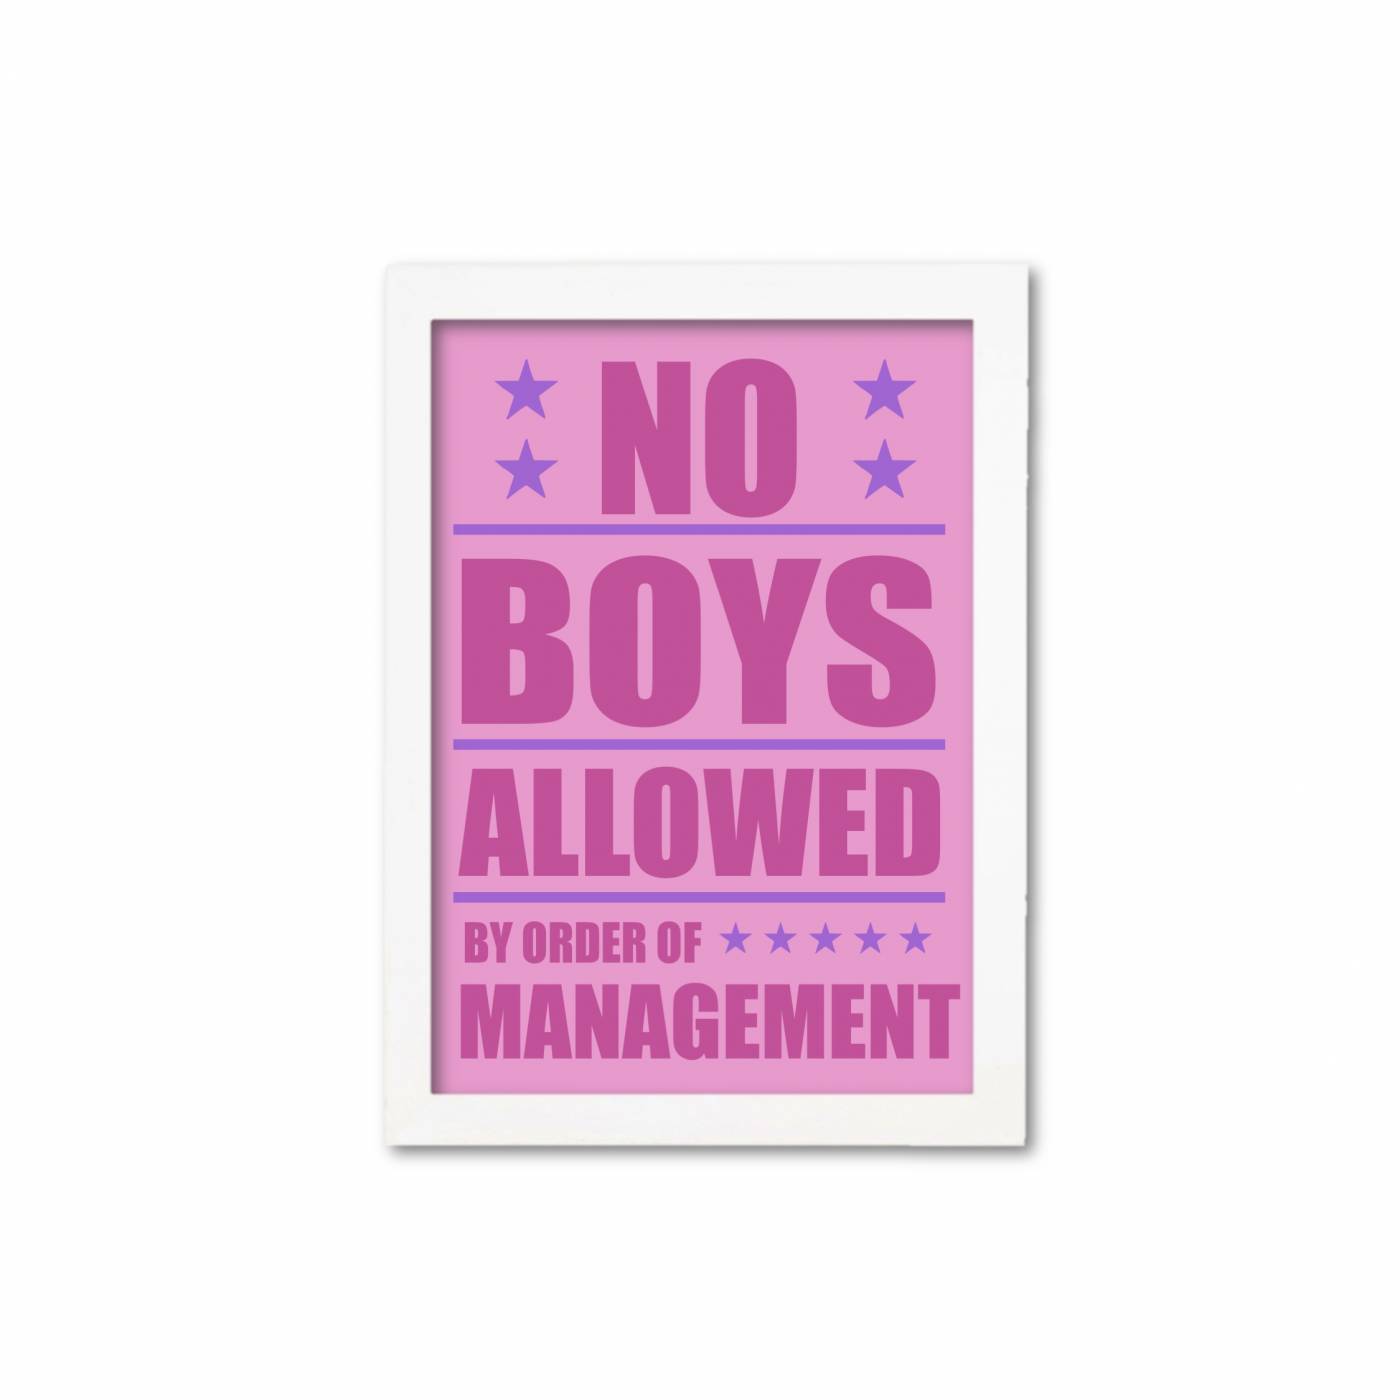 No boys